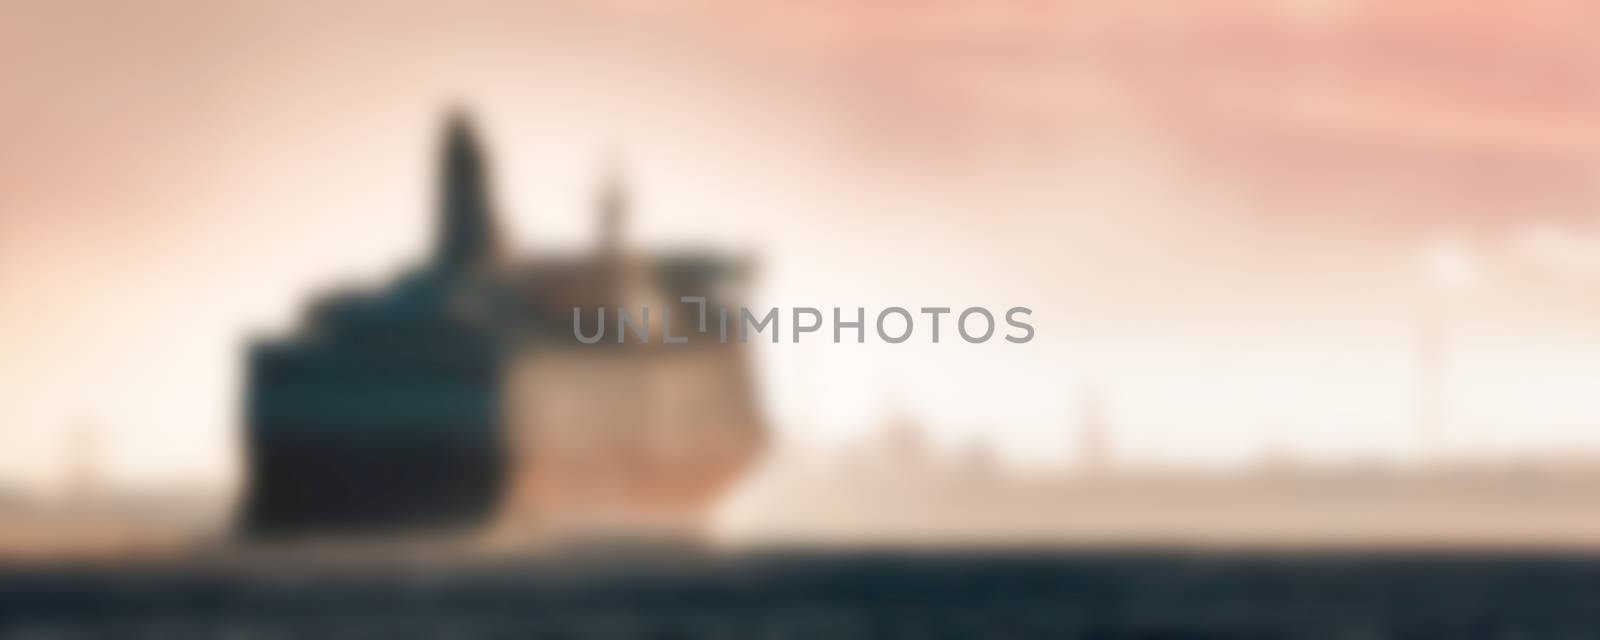 Passenger ship - blurred image by sengnsp